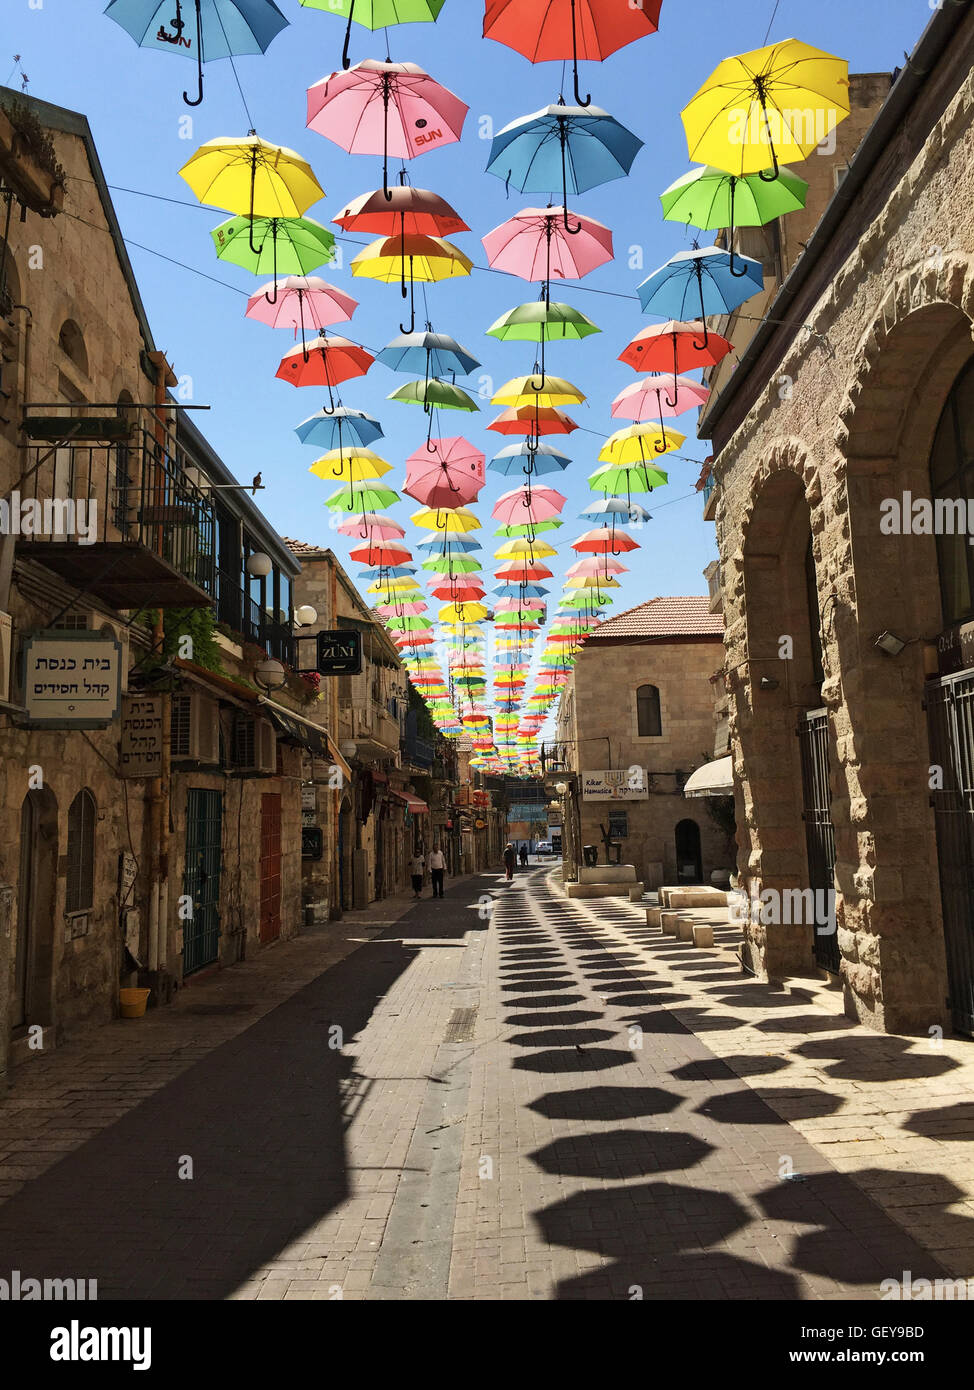 Jerusalem: bunte Sonnenschirme hängen an Yoel Moshe Salomo Straße für die  Schirme Street Projekt von Jerusalem Development Authority gefördert  Stockfotografie - Alamy